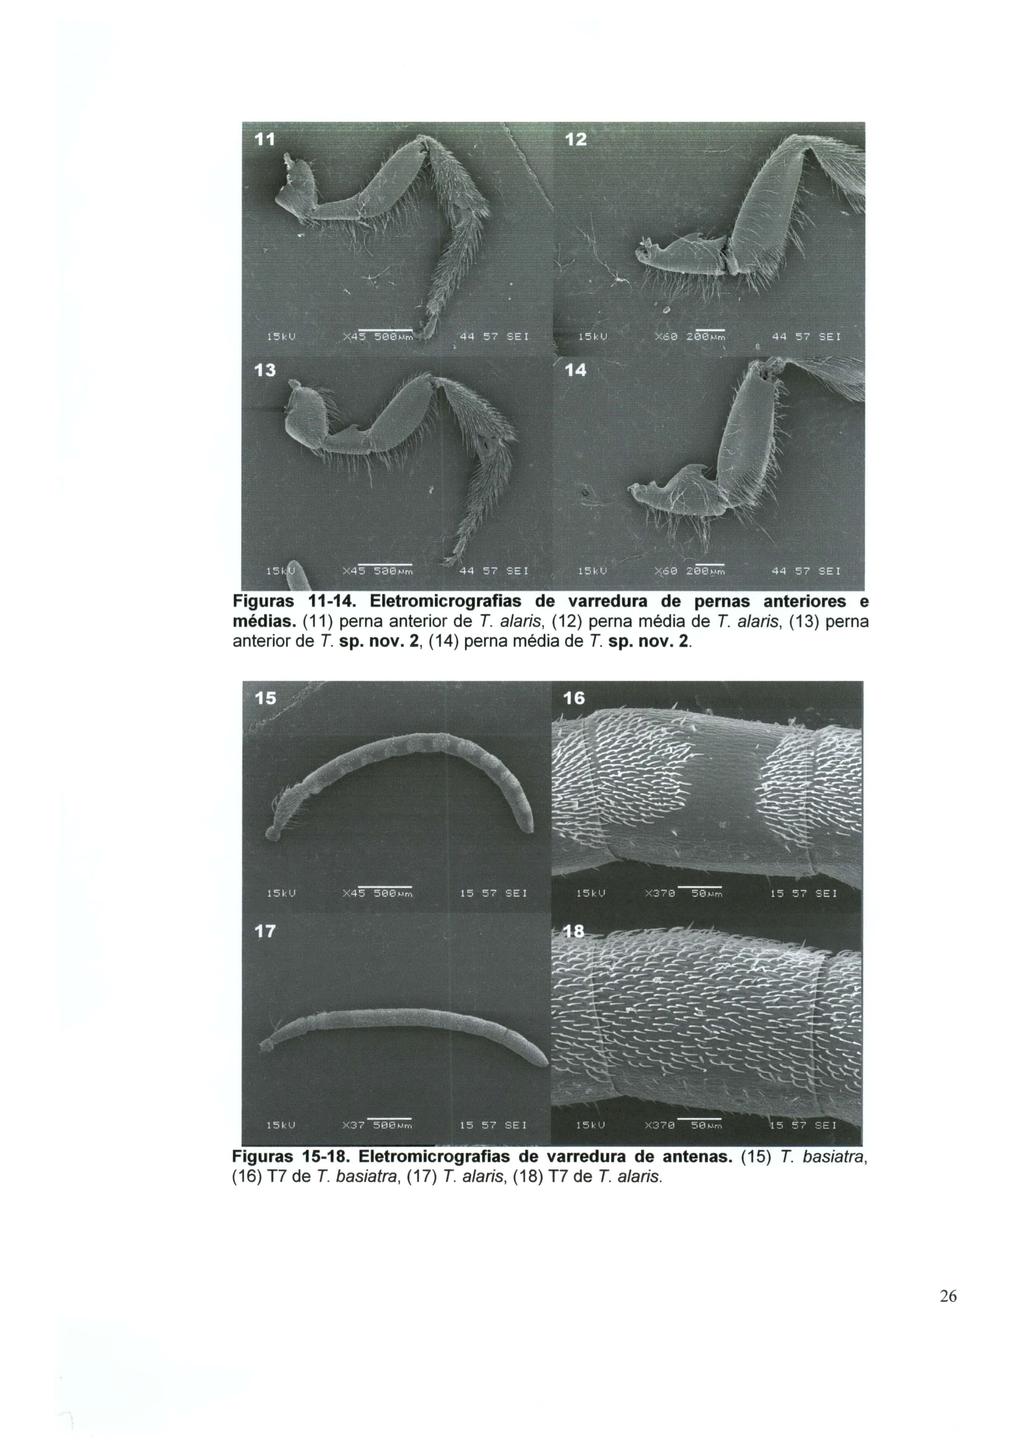 Figuras 11-14. Eletromicrografias de varredura de pernas anteriores e médias. (11) perna anterior de T. ala ris, (12) perna média de T. ala ris, (13) perna anterior de T. sp.